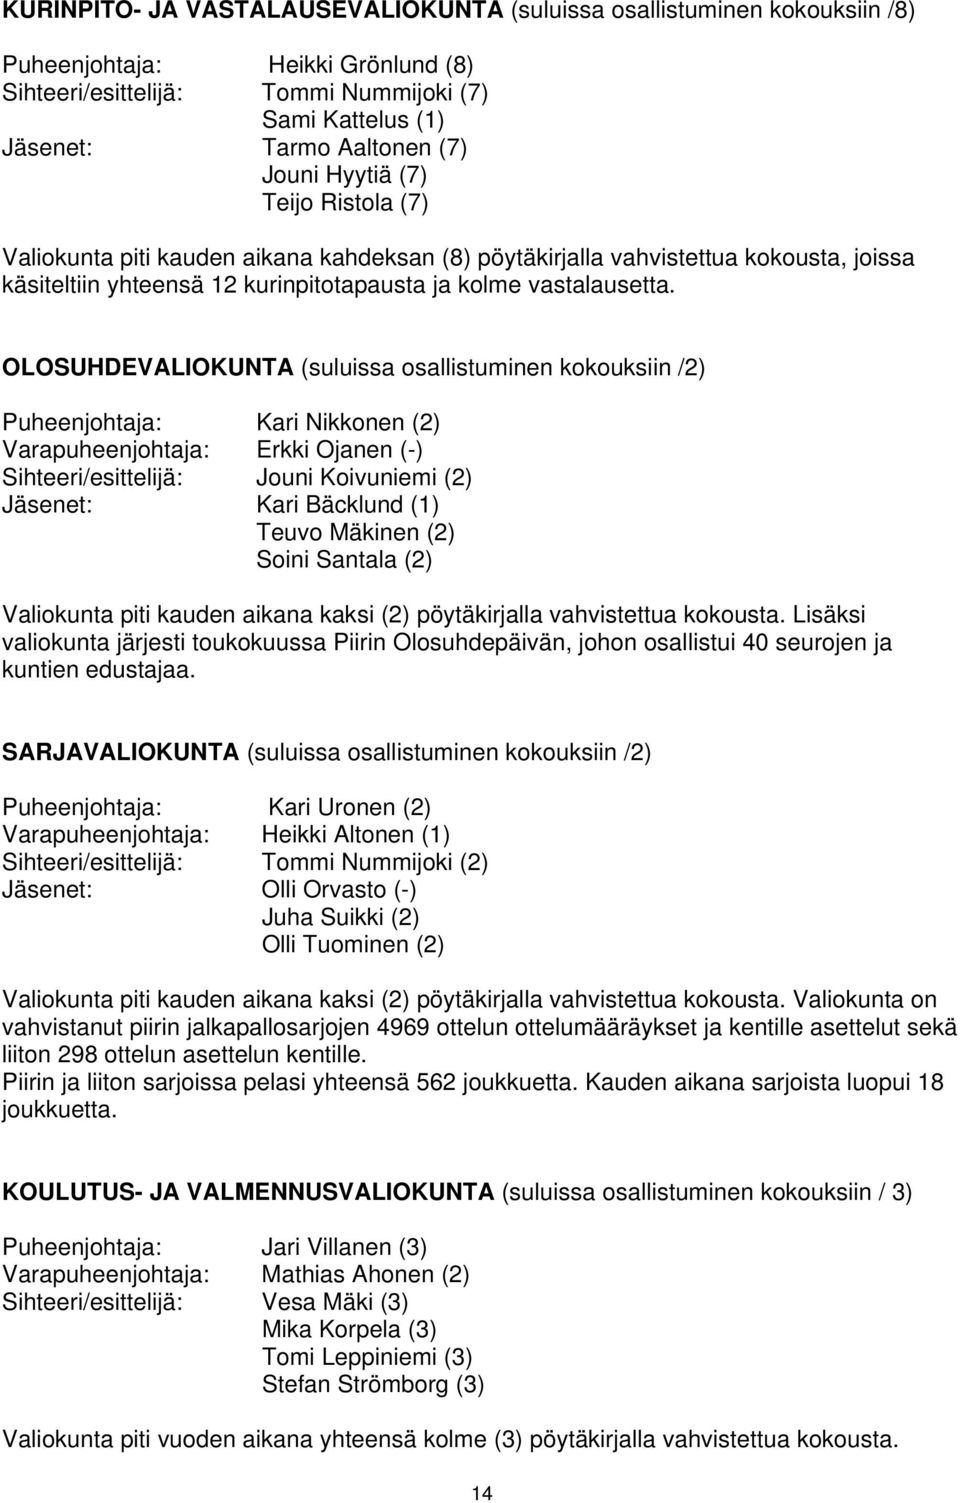 OLOSUHDEVALIOKUNTA (suluissa osallistuminen kokouksiin /2) Puheenjohtaja: Kari Nikkonen (2) Varapuheenjohtaja: Erkki Ojanen (-) Sihteeri/esittelijä: Jouni Koivuniemi (2) Jäsenet: Kari Bäcklund (1)